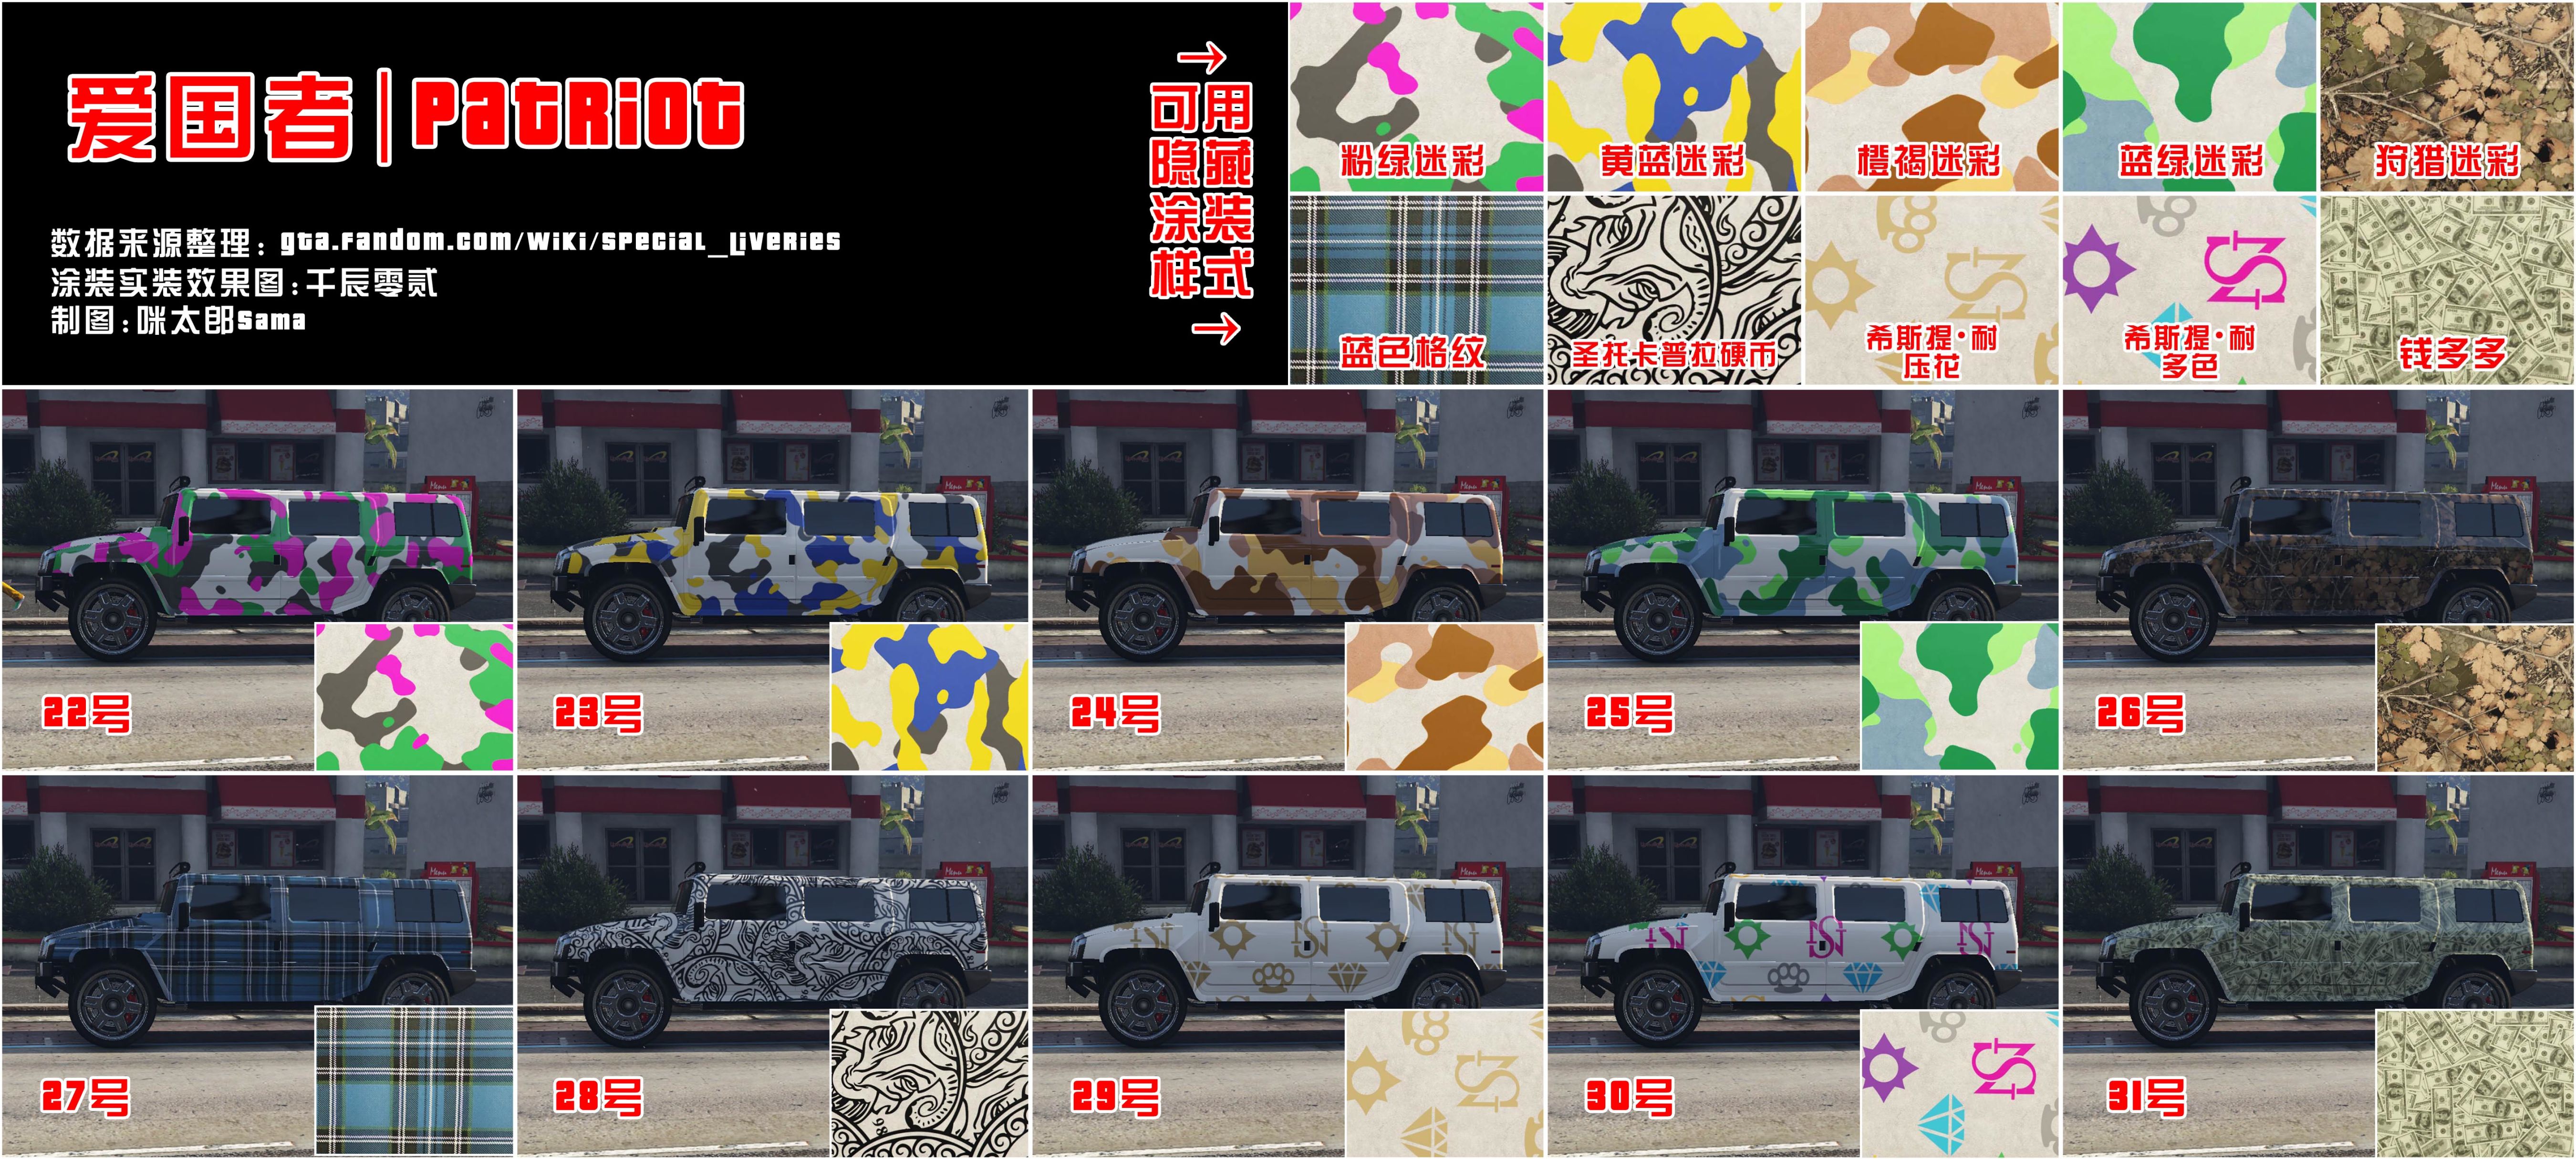 【俠盜獵車手5】GTA在線模式:所有載具特殊塗裝盤點/實拍/獲取來源-第45張